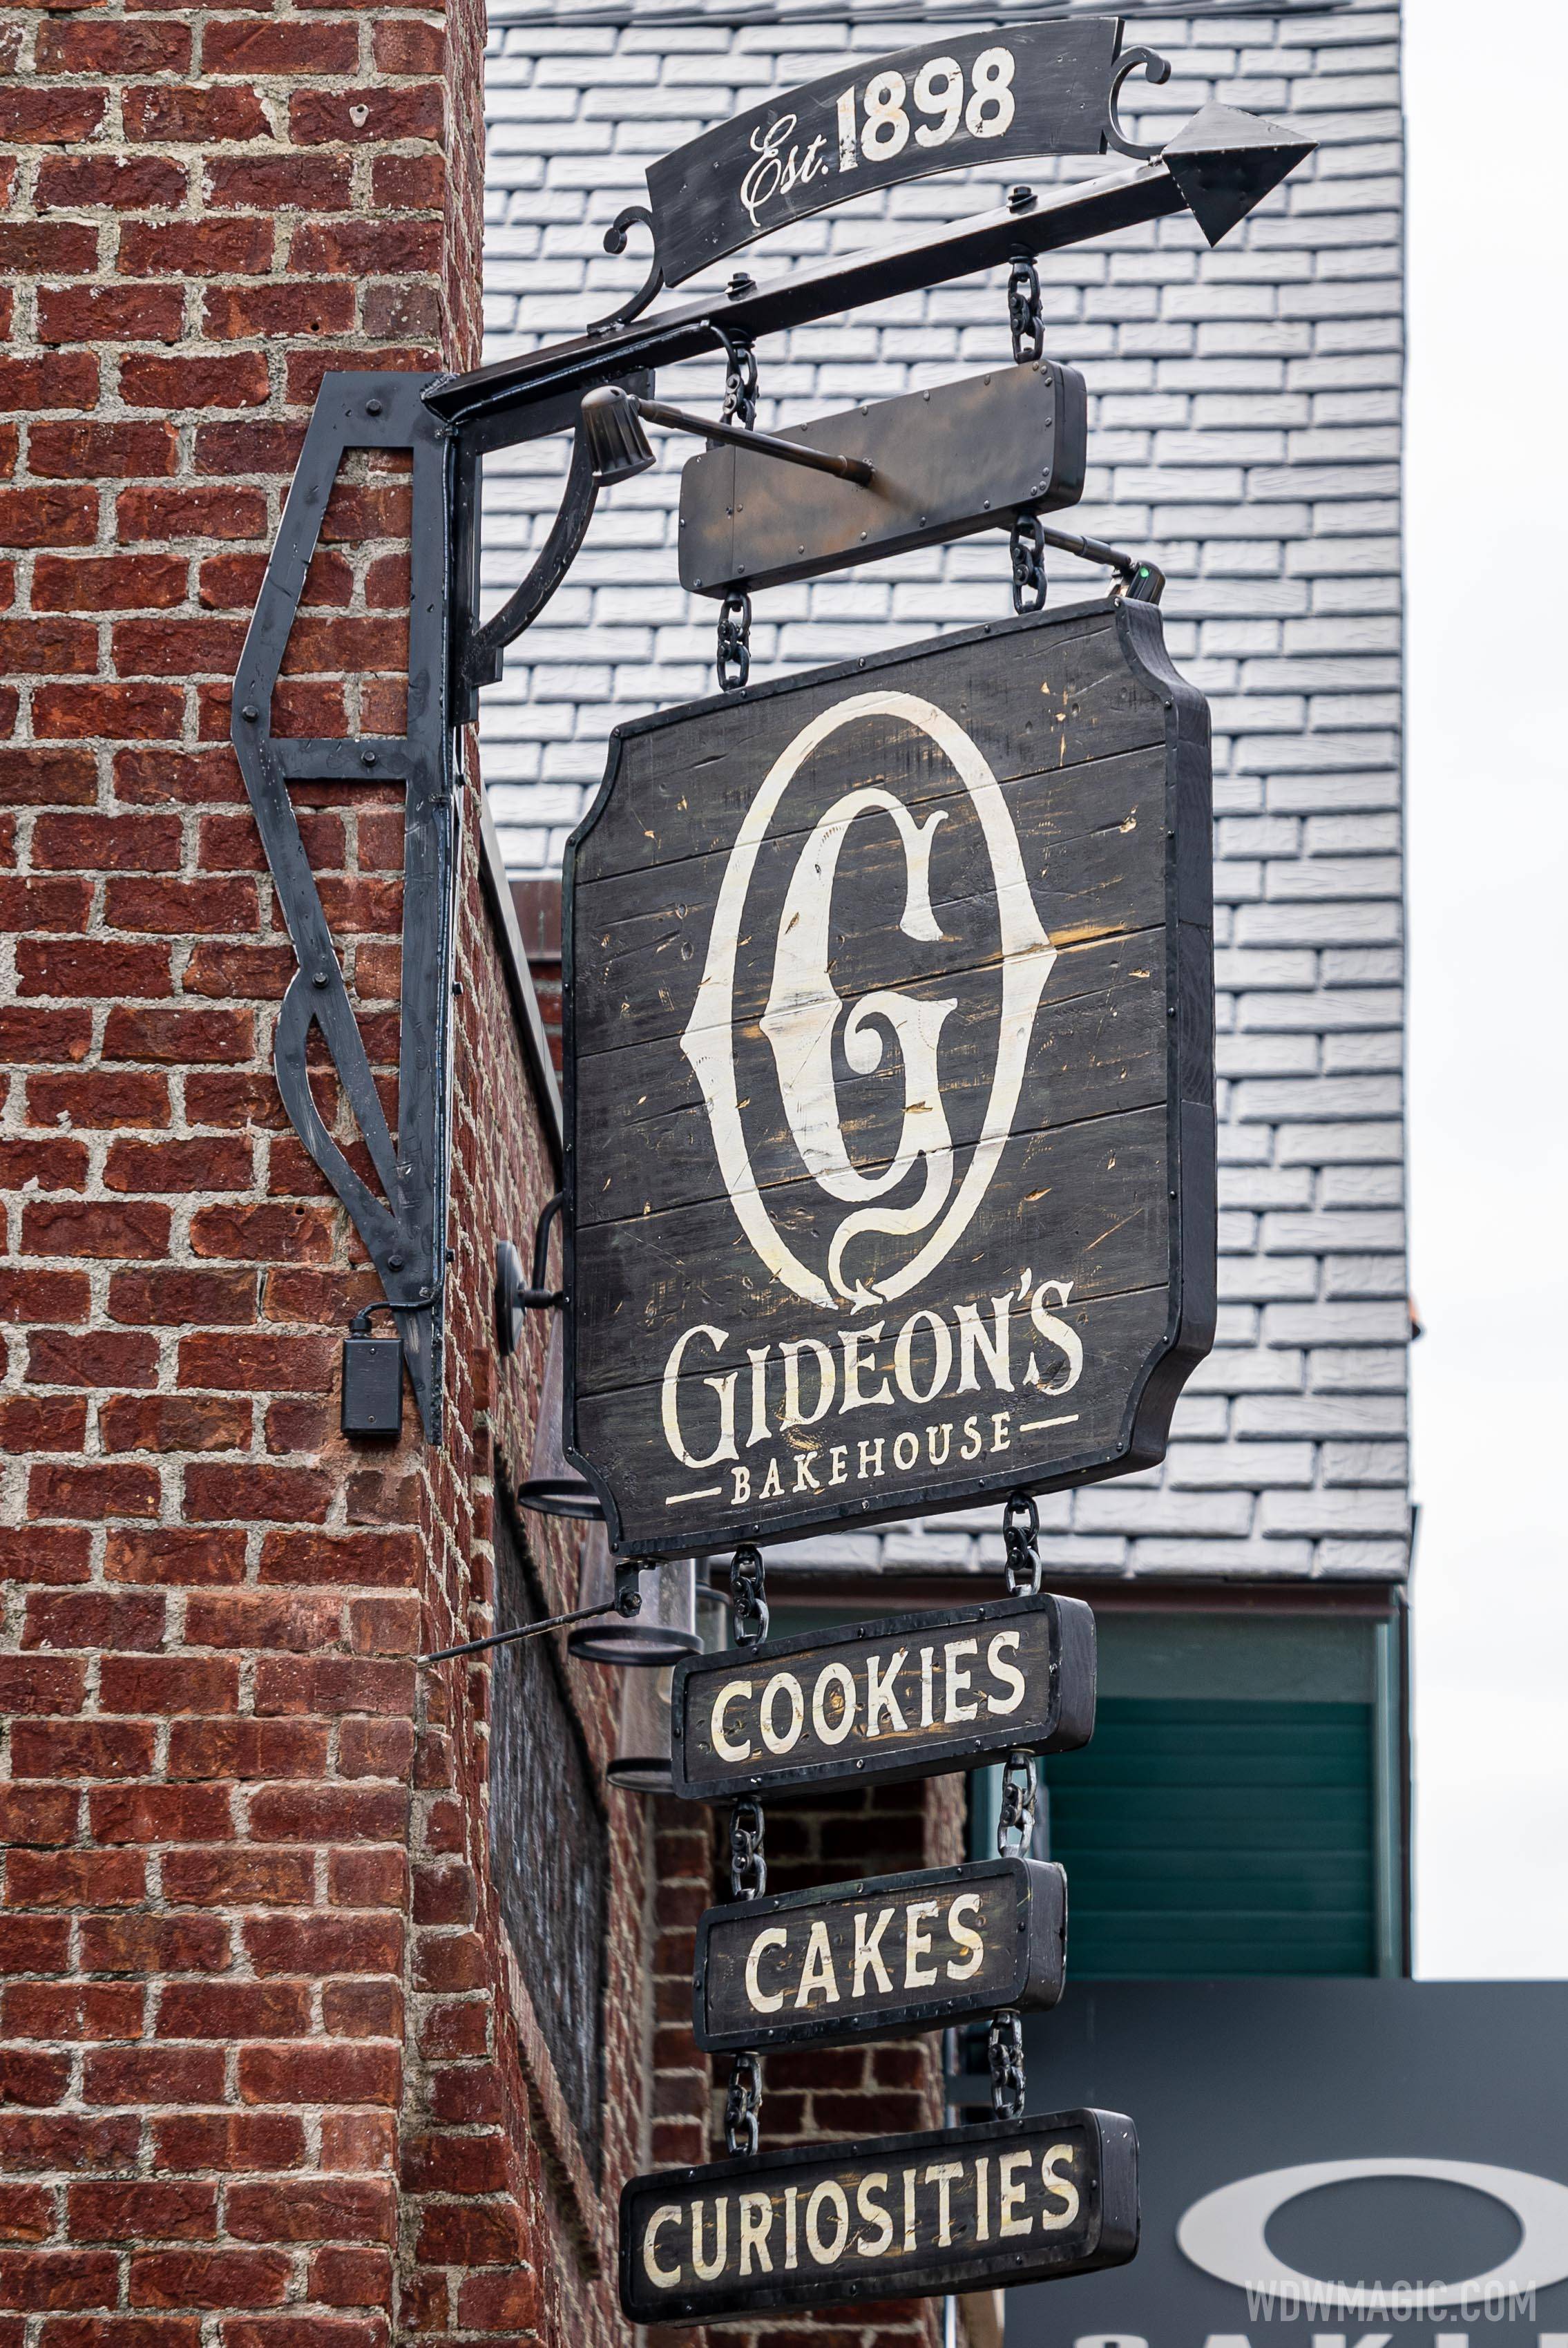 Gideon's Bakehouse construction - October 1 2020